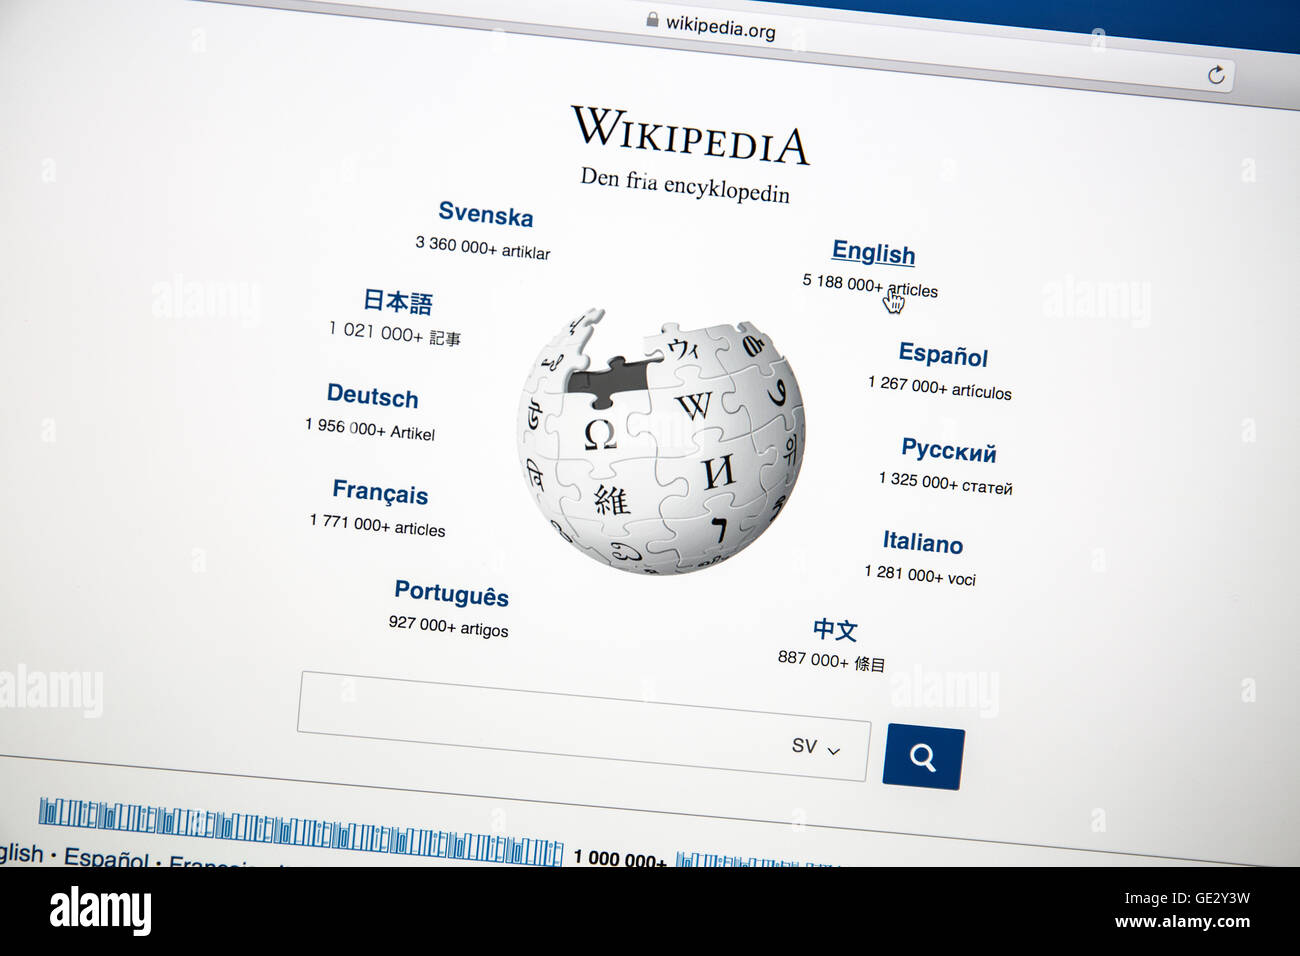 Sito web di Wikipedia sullo schermo di un computer.Wikipedia è una connessione Internet gratuita enciclopedia. Foto Stock